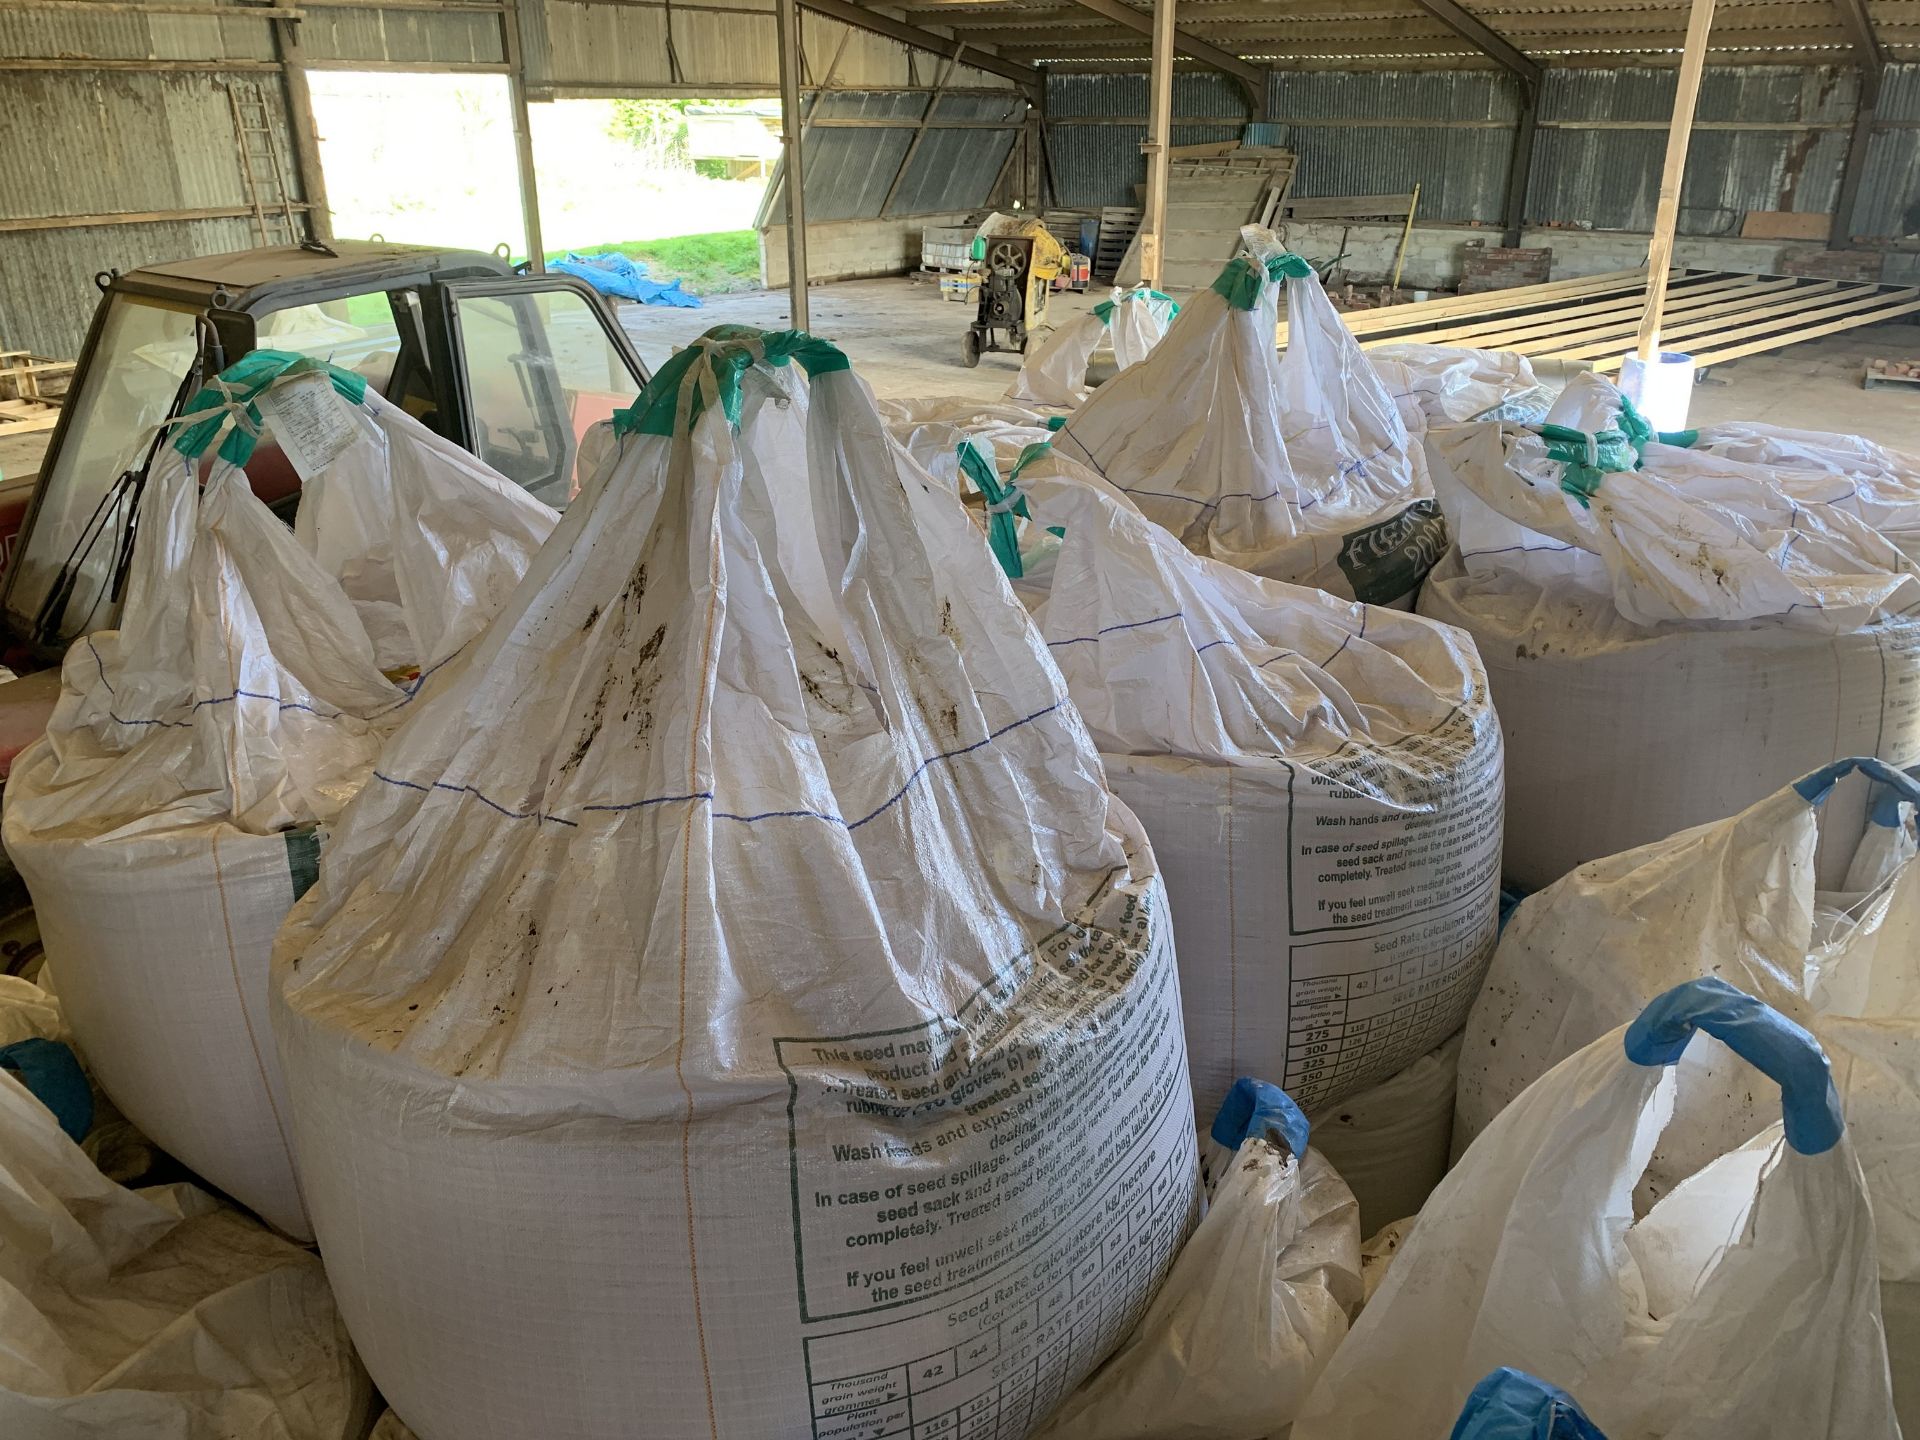 2x 500kg bags Skyway spring barley seed (0% VAT)